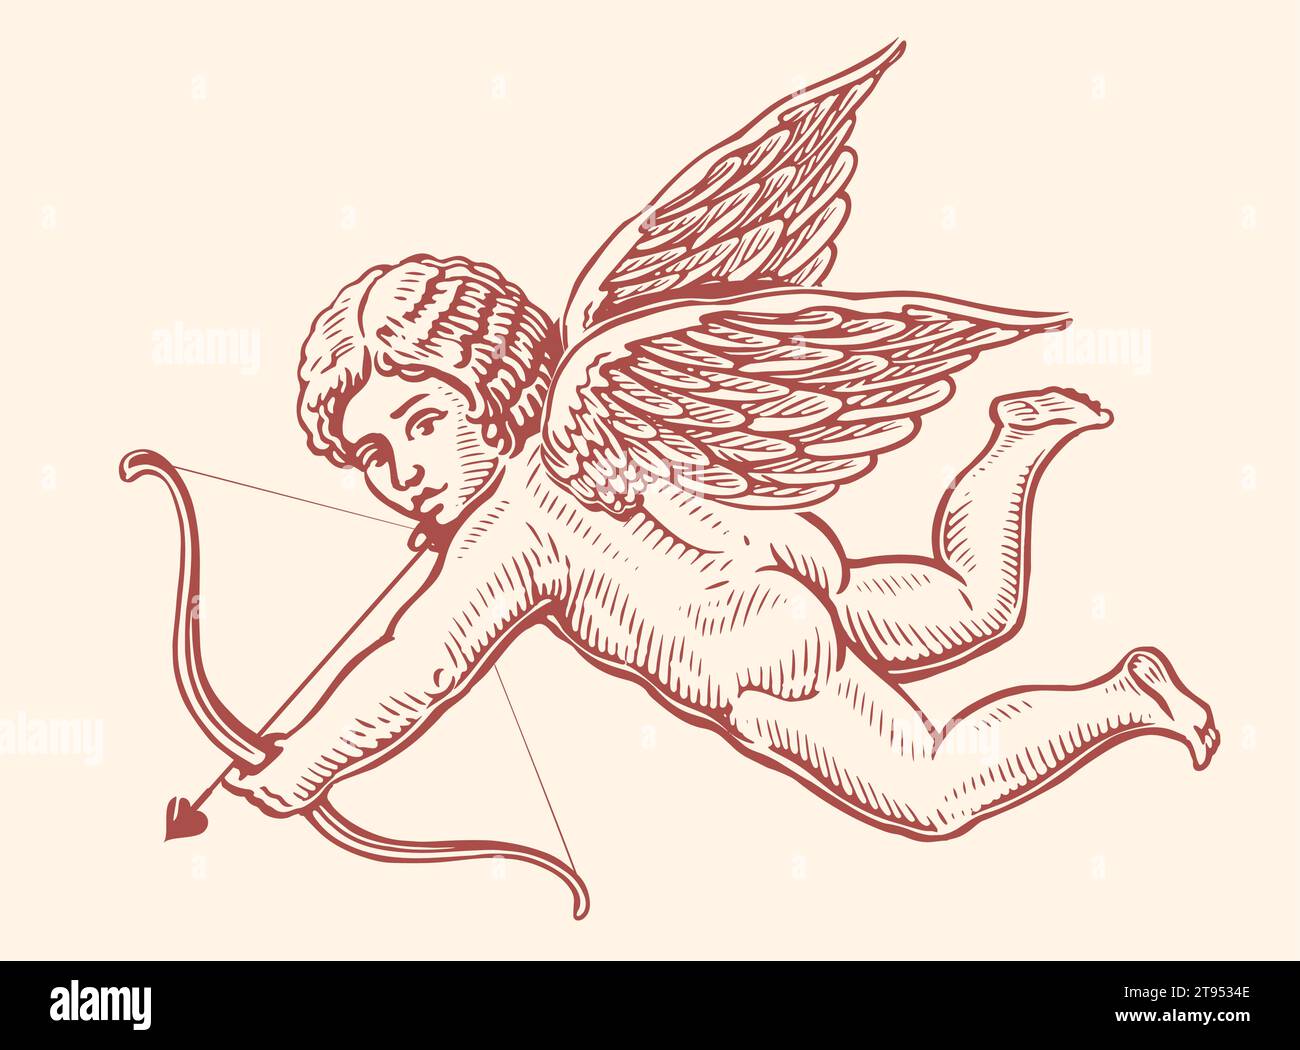 Arco E Freccia Del Cupido Di Schizzo Illustrazione Vettoriale -  Illustrazione di monocromatico, giorno: 85533341